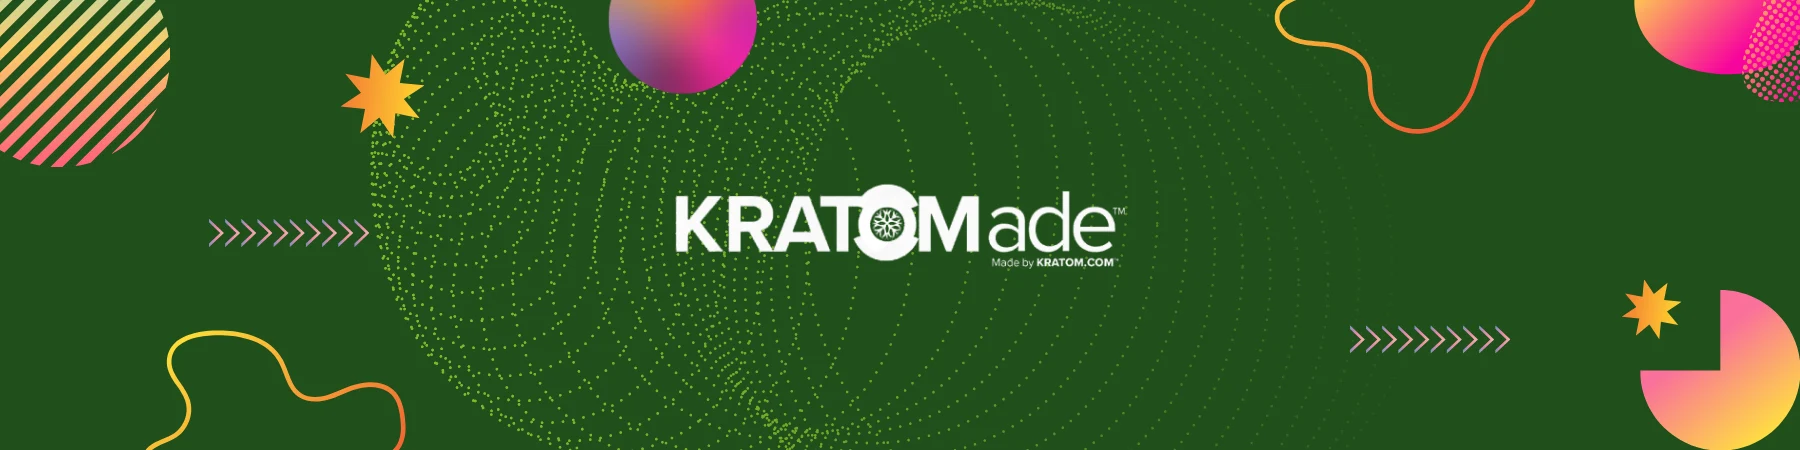 Kratomade